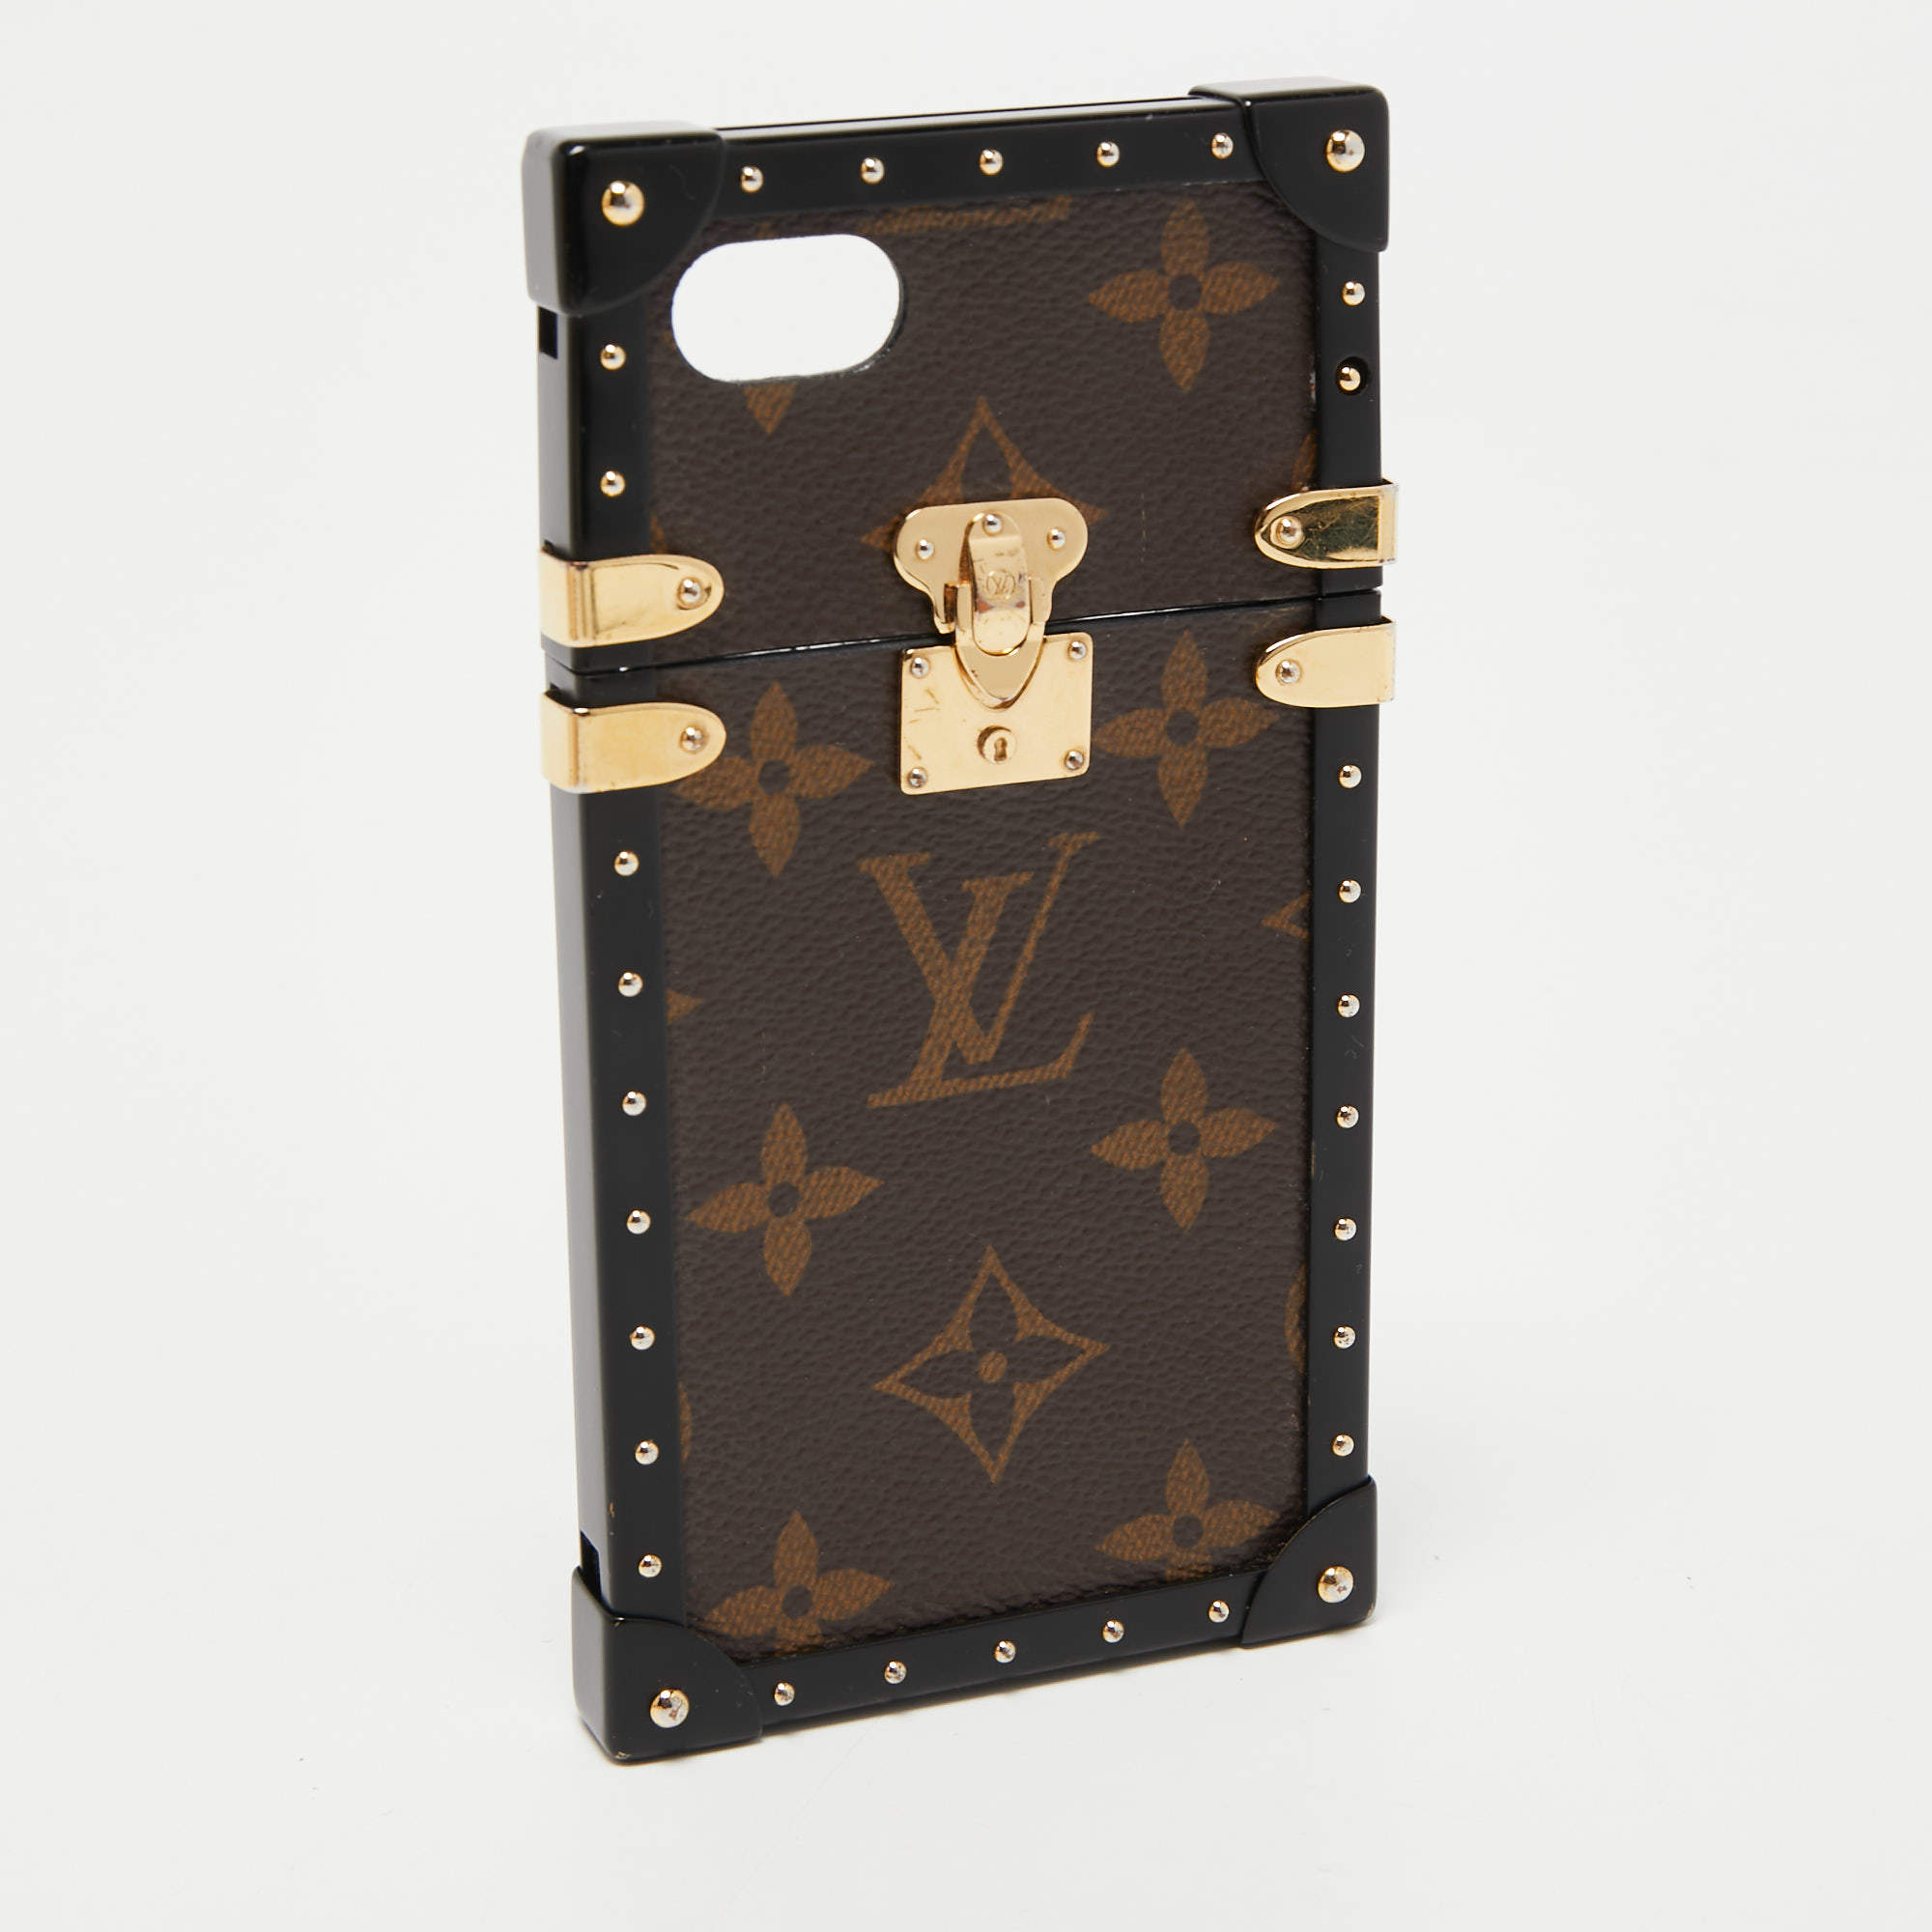 Case for iPhone 8 Plus - Louis Vuitton Gold